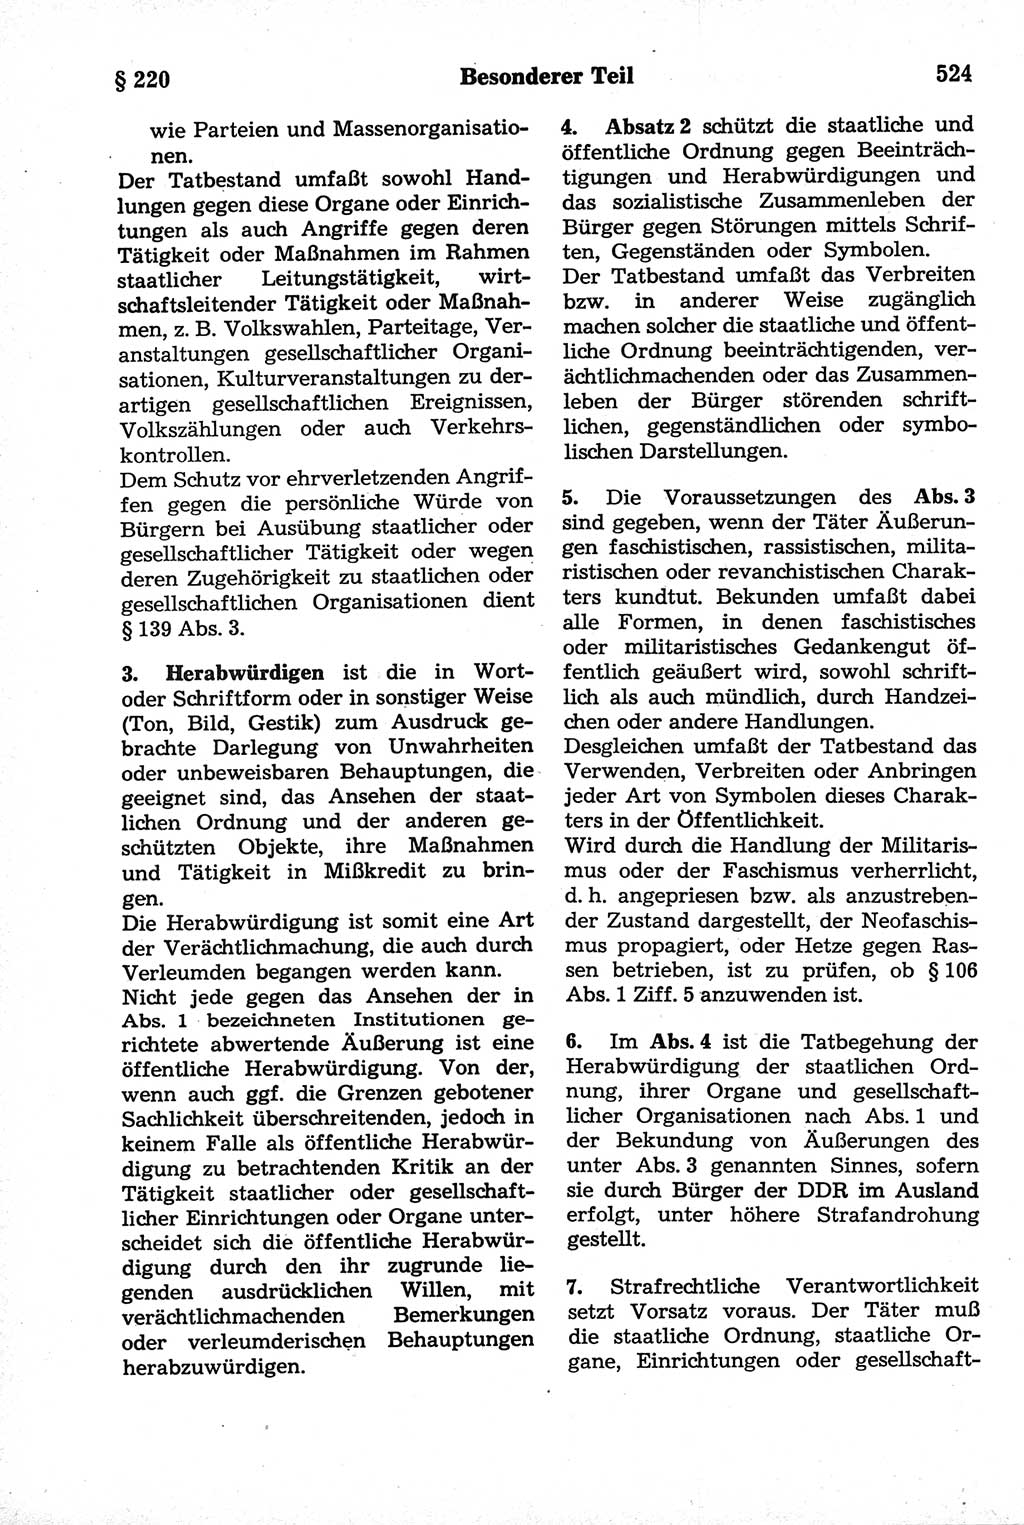 Strafrecht der Deutschen Demokratischen Republik (DDR), Kommentar zum Strafgesetzbuch (StGB) 1981, Seite 524 (Strafr. DDR Komm. StGB 1981, S. 524)